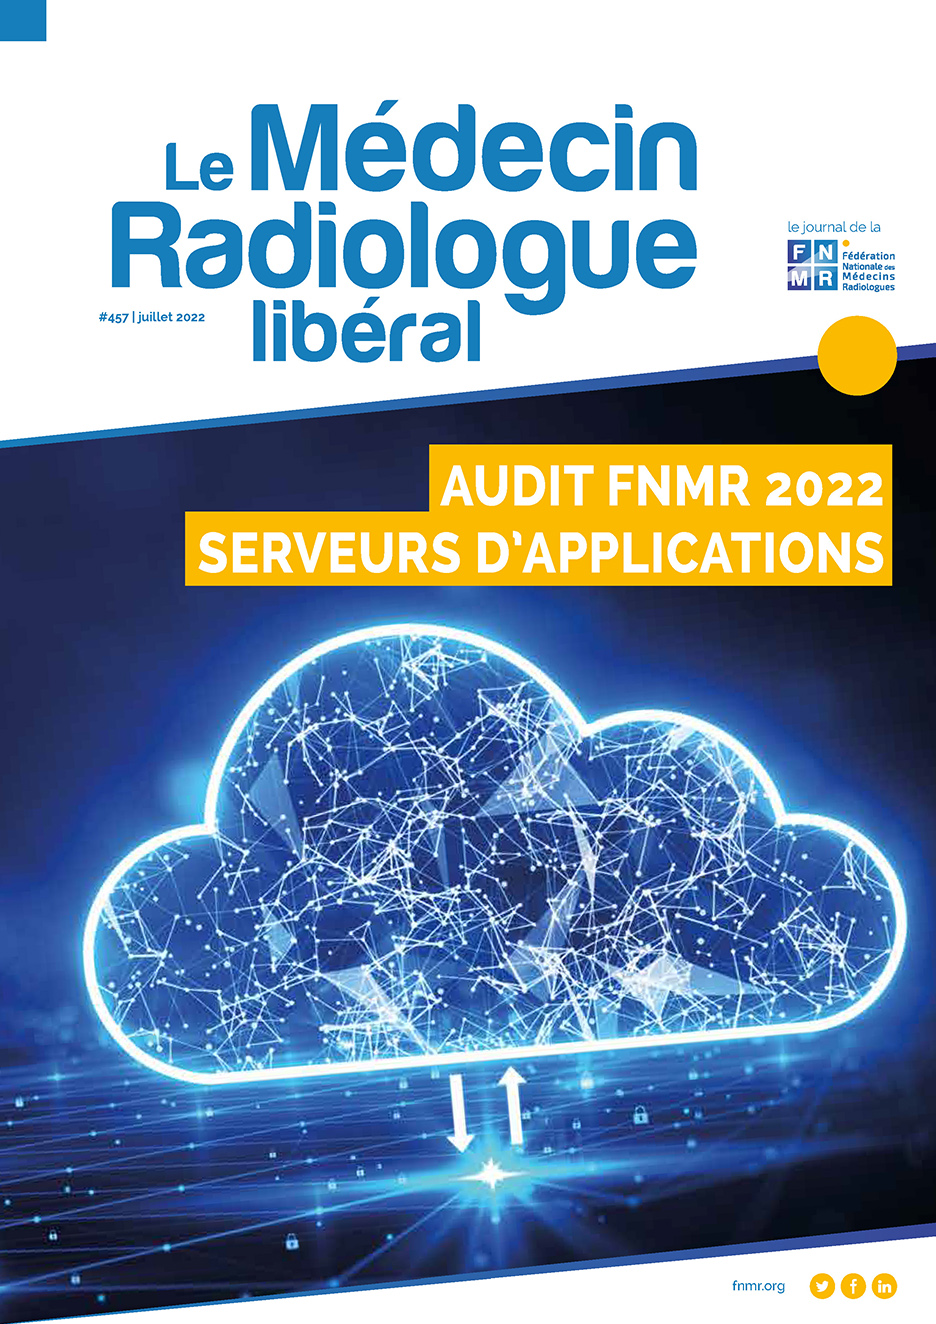 Le Médecin Radiologue Libéral # 457 Juillet 2022